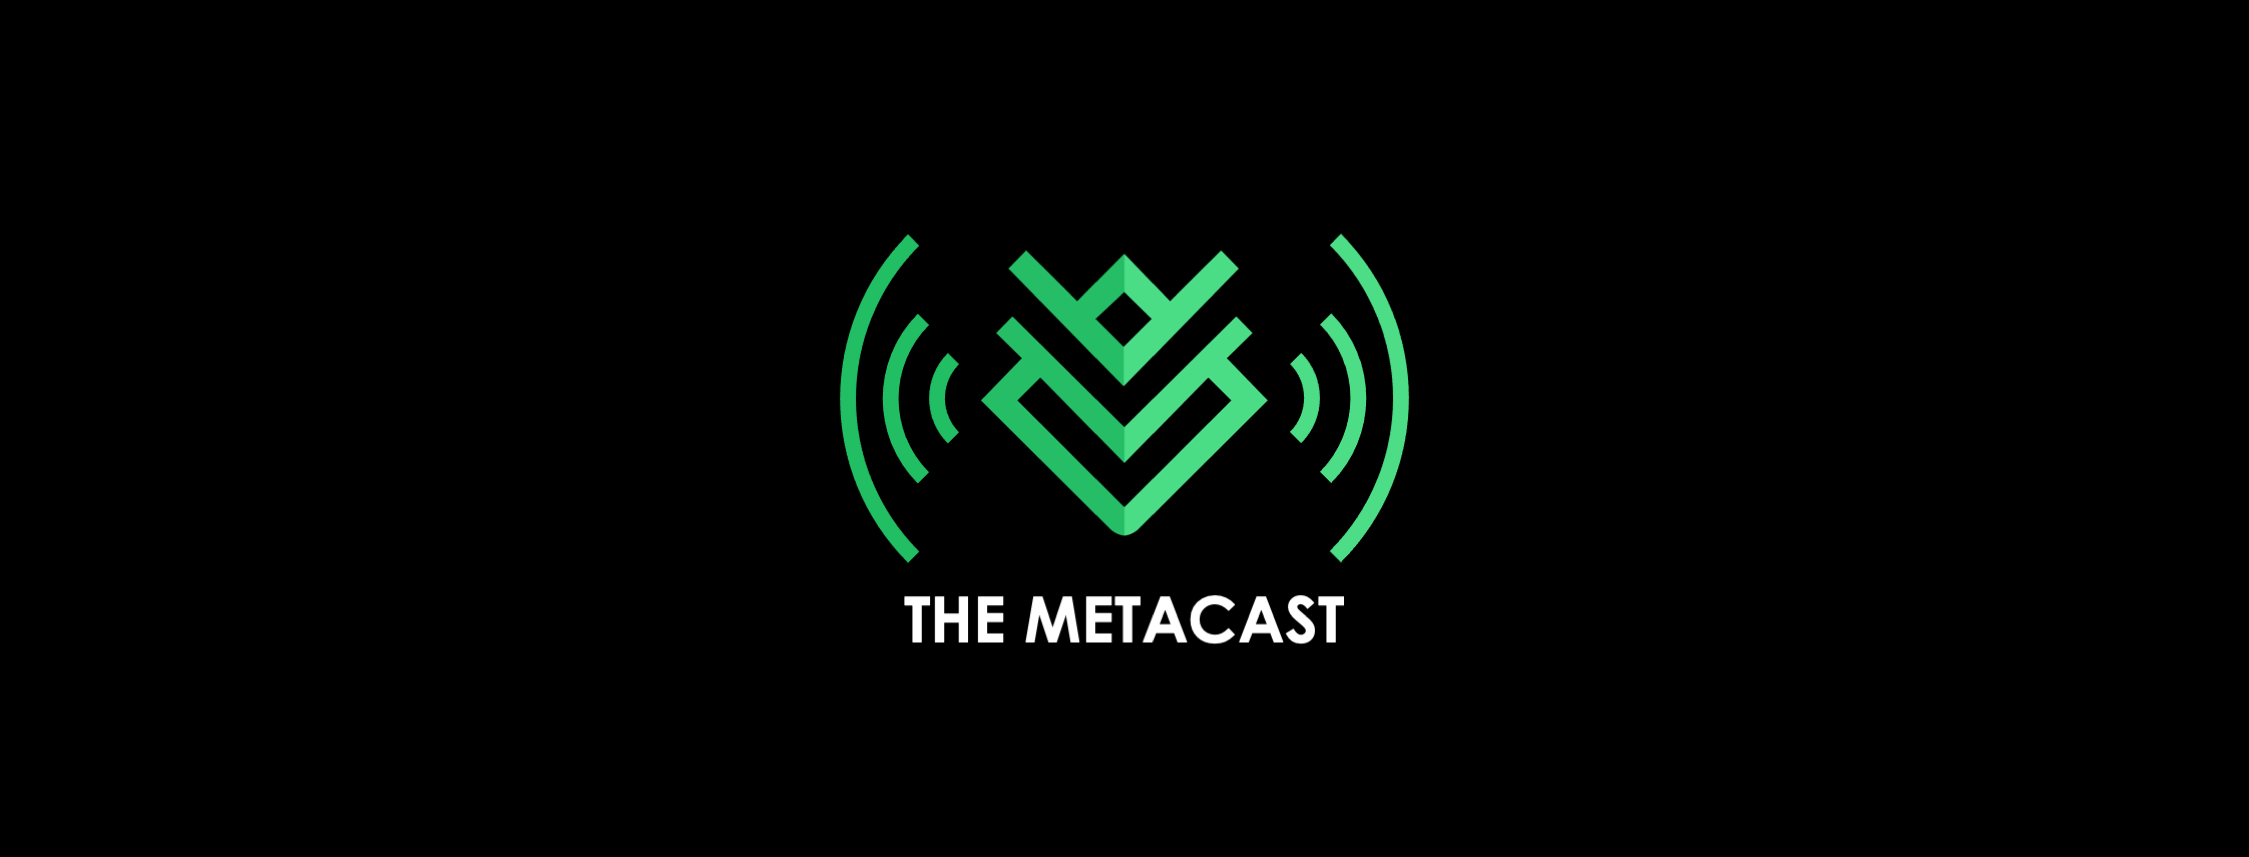 The Metacast